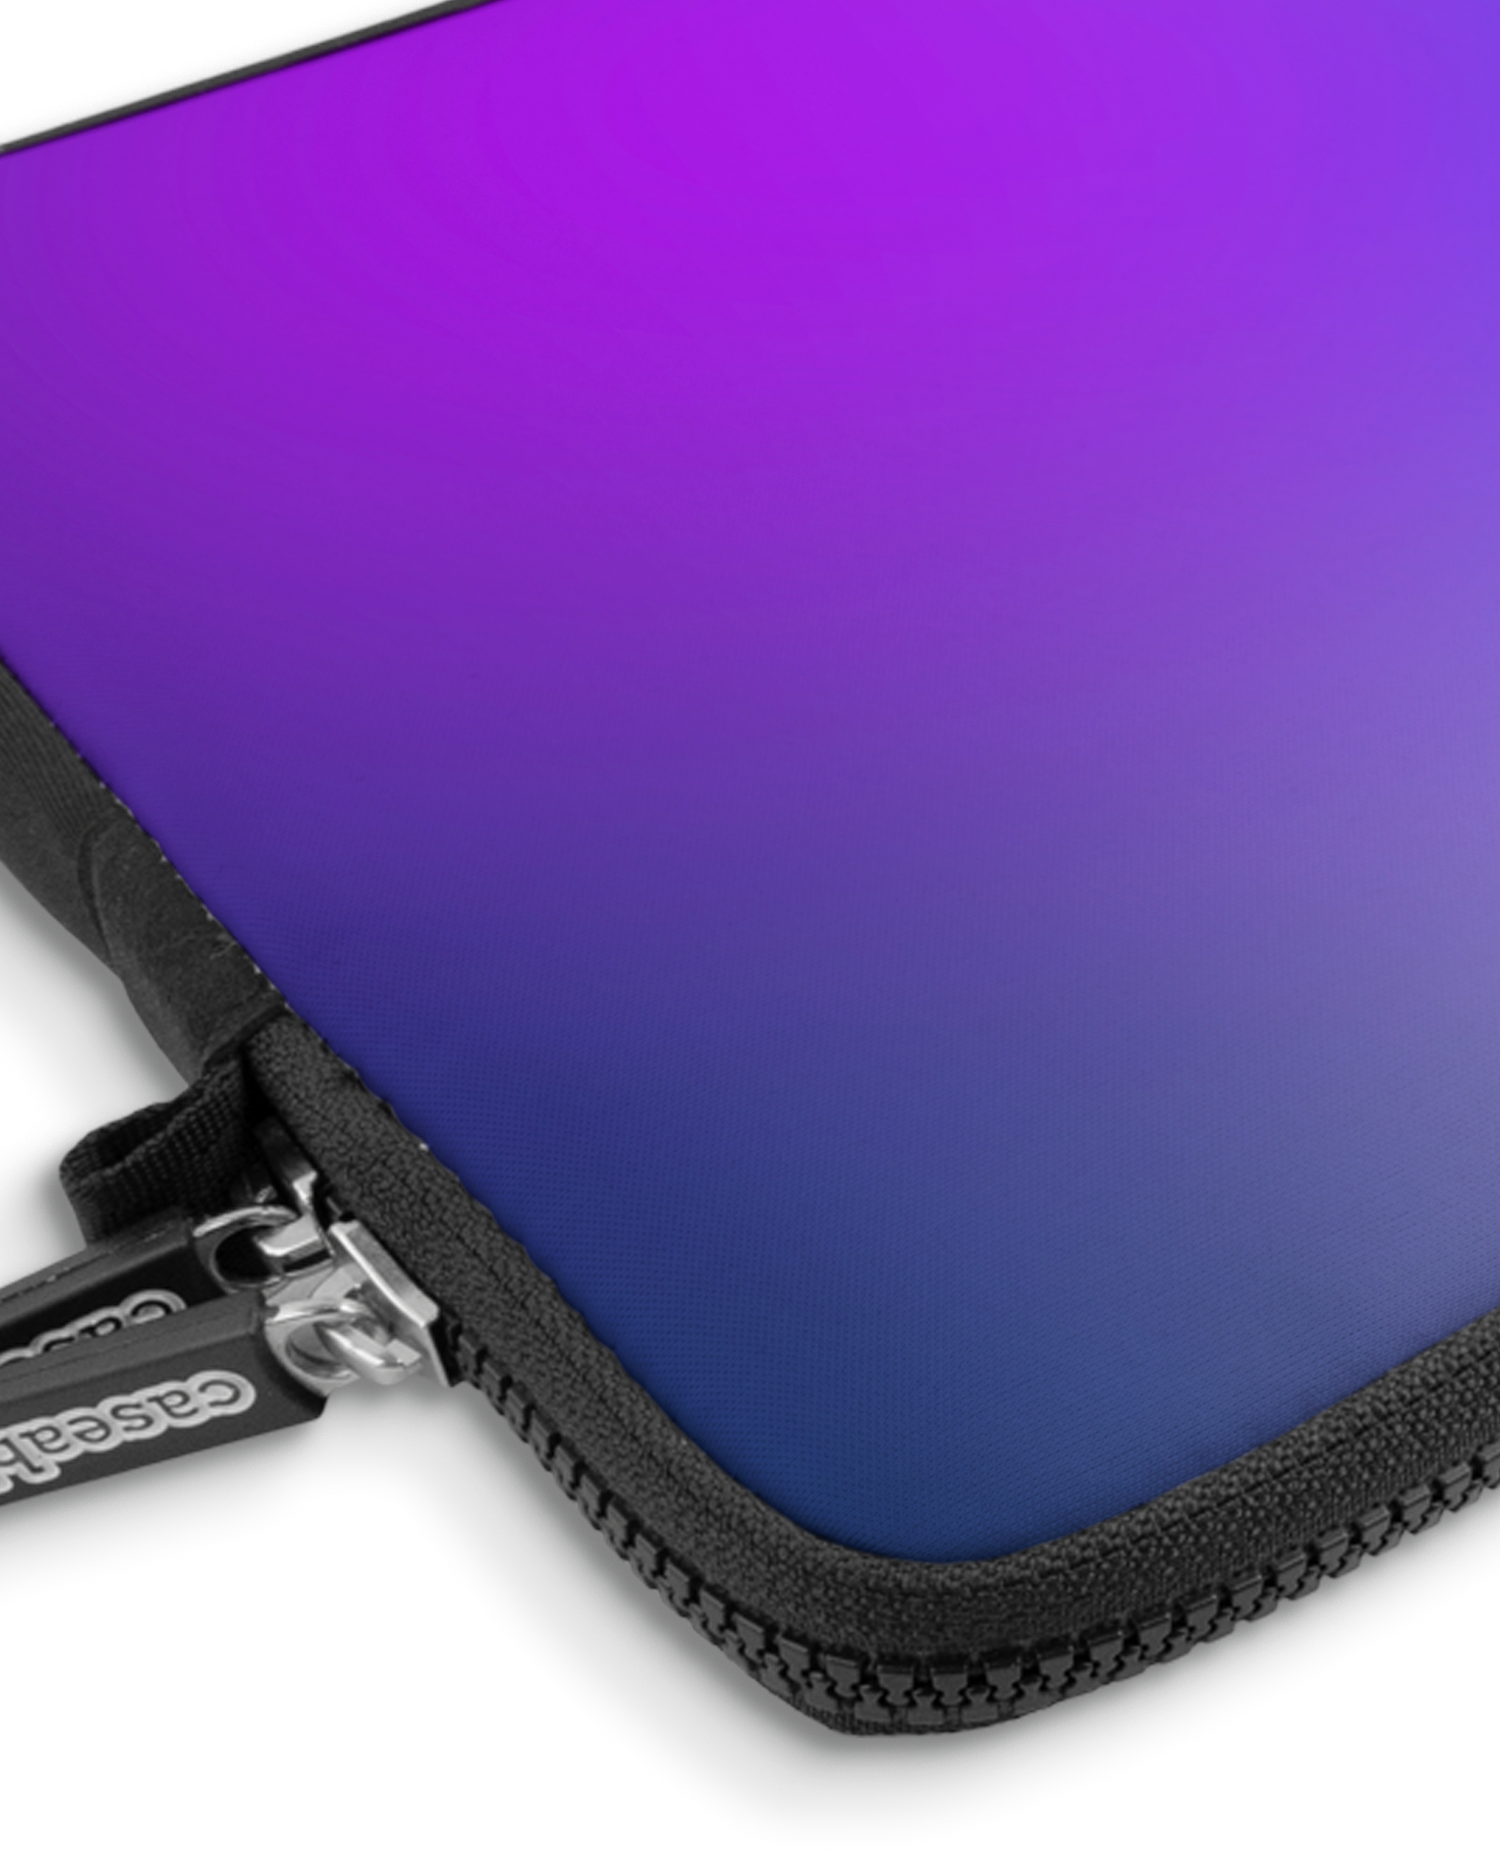 Blueberry Premium Laptoptasche 13 Zoll mit Gerät im Inneren